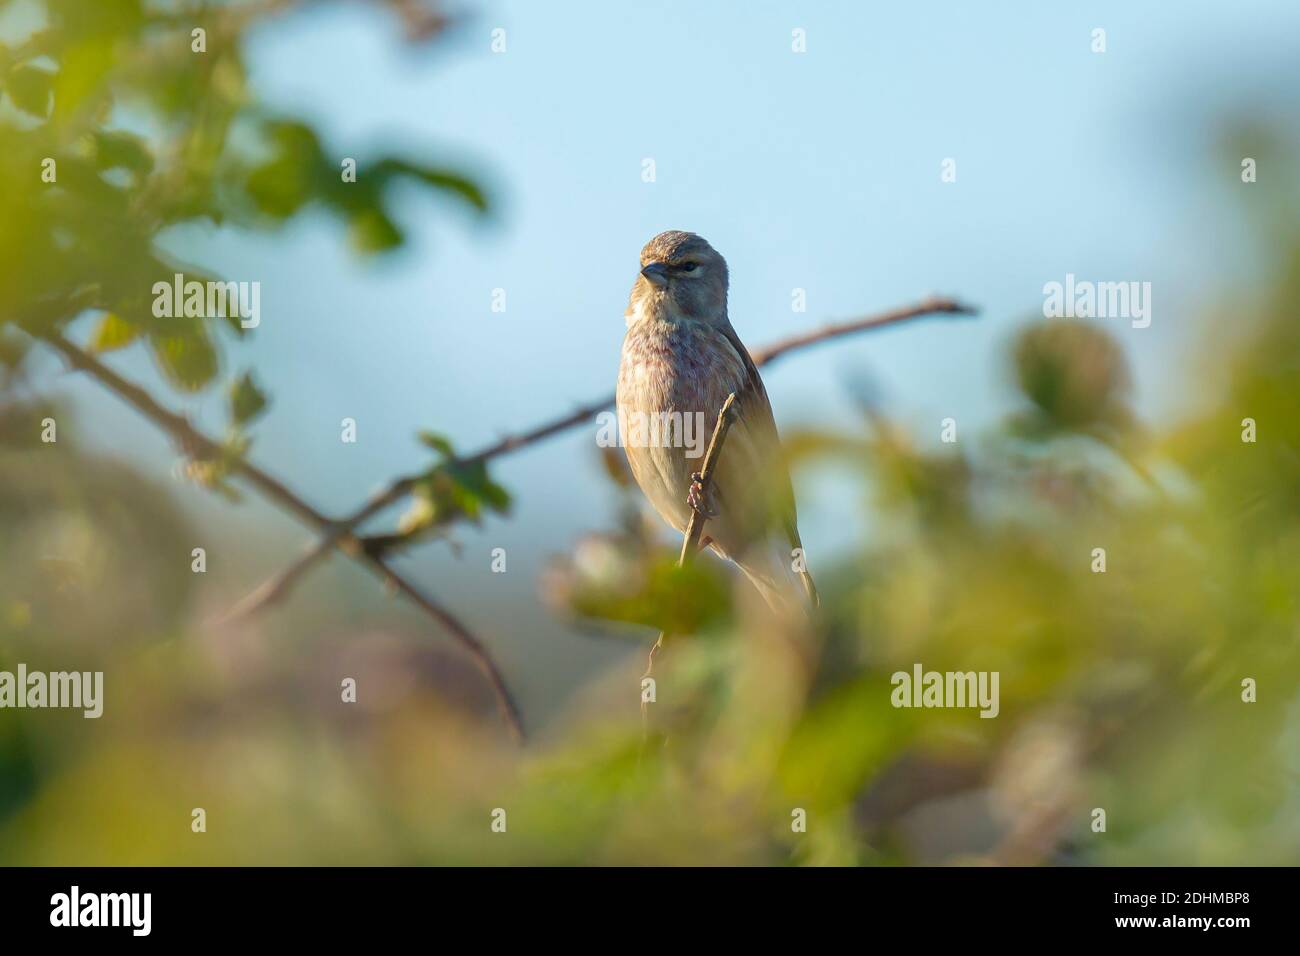 Nahaufnahme Porträt eines Linnet Vogelmännchens, Carduelis cannabina, Anzeige und Suche nach einem Partner während der Frühjahrssaison. Singen in den frühen Morgensonli Stockfoto